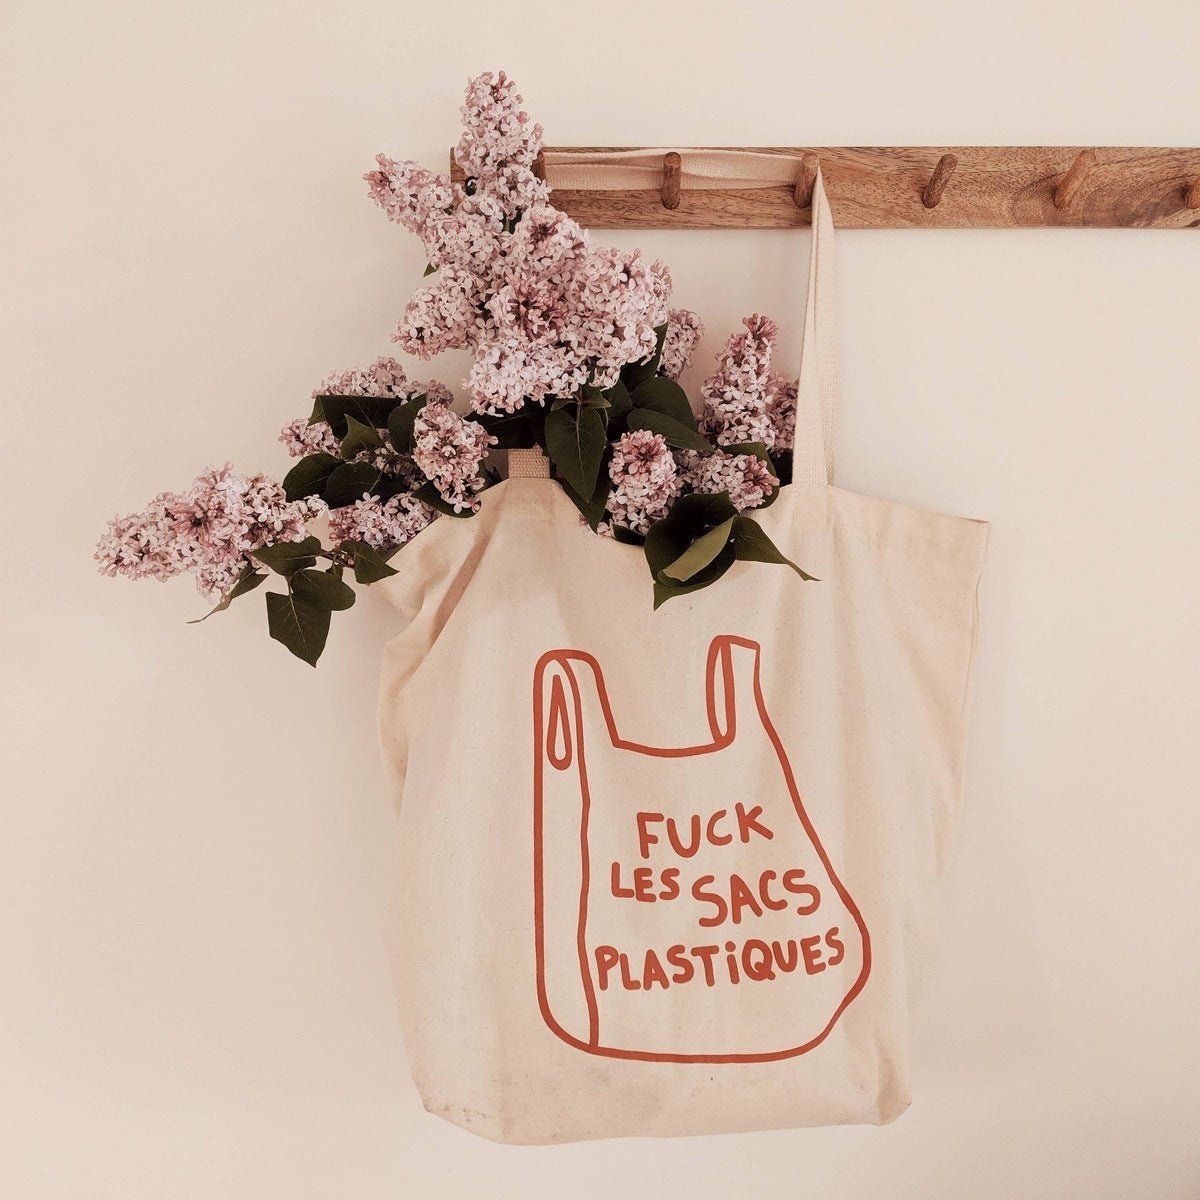 Fuck Les Sacs Plastique' Printed Cotton Tote Bag Bags + Pouches